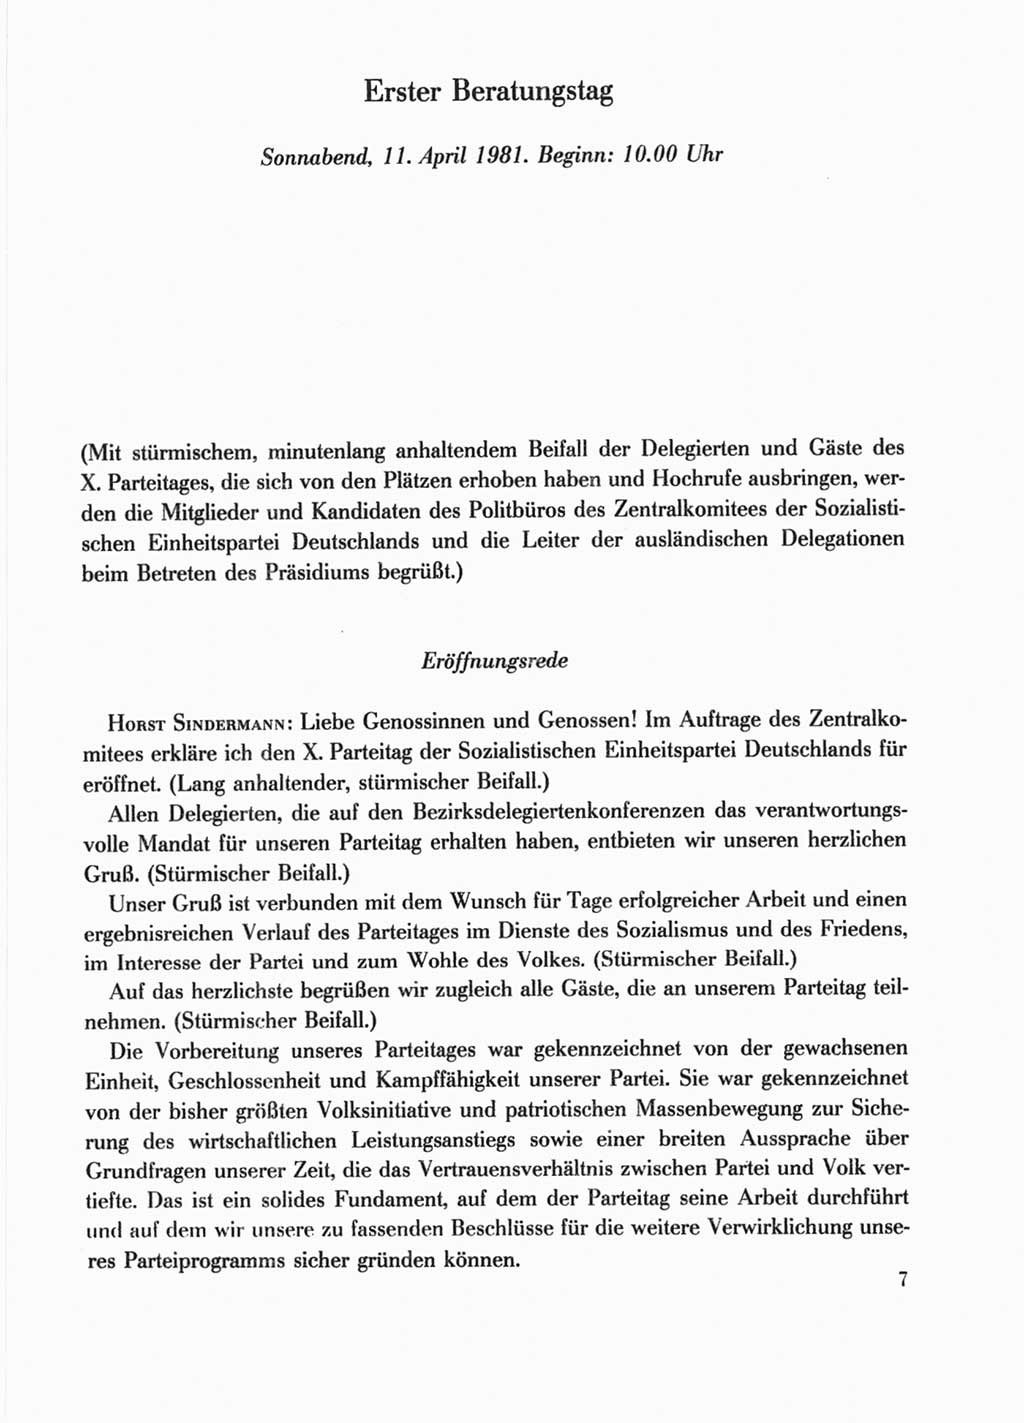 Protokoll der Verhandlungen des Ⅹ. Parteitages der Sozialistischen Einheitspartei Deutschlands (SED) [Deutsche Demokratische Republik (DDR)] 1981, Band 1, Seite 7 (Prot. Verh. Ⅹ. PT SED DDR 1981, Bd. 1, S. 7)